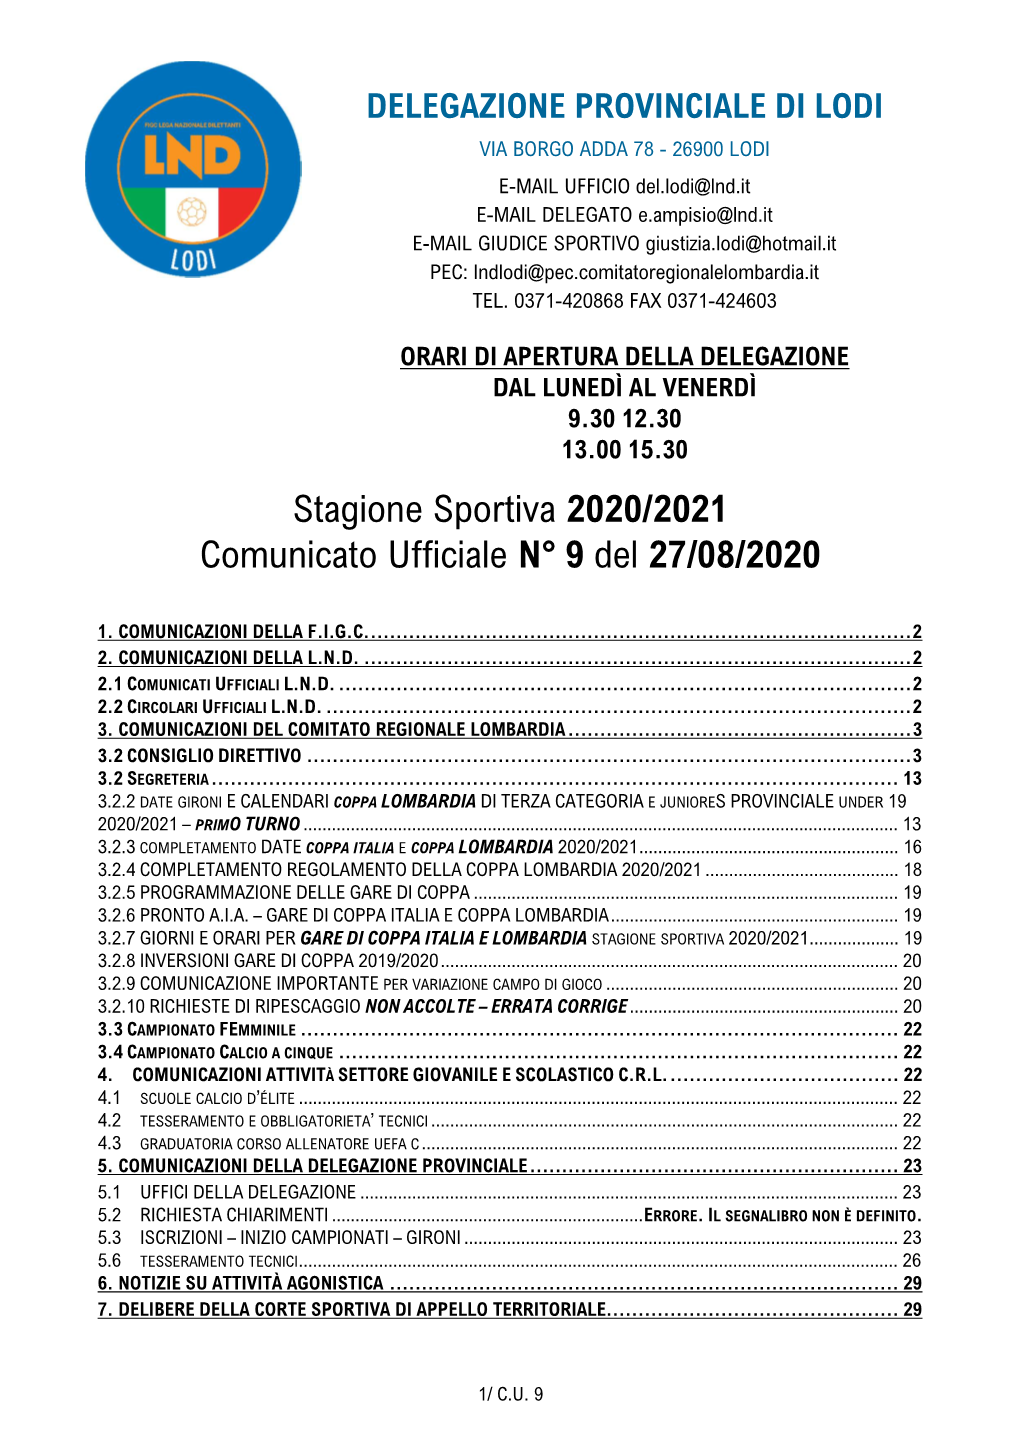 Stagione Sportiva 2020/2021 Comunicato Ufficiale N° 9 Del 27/08/2020